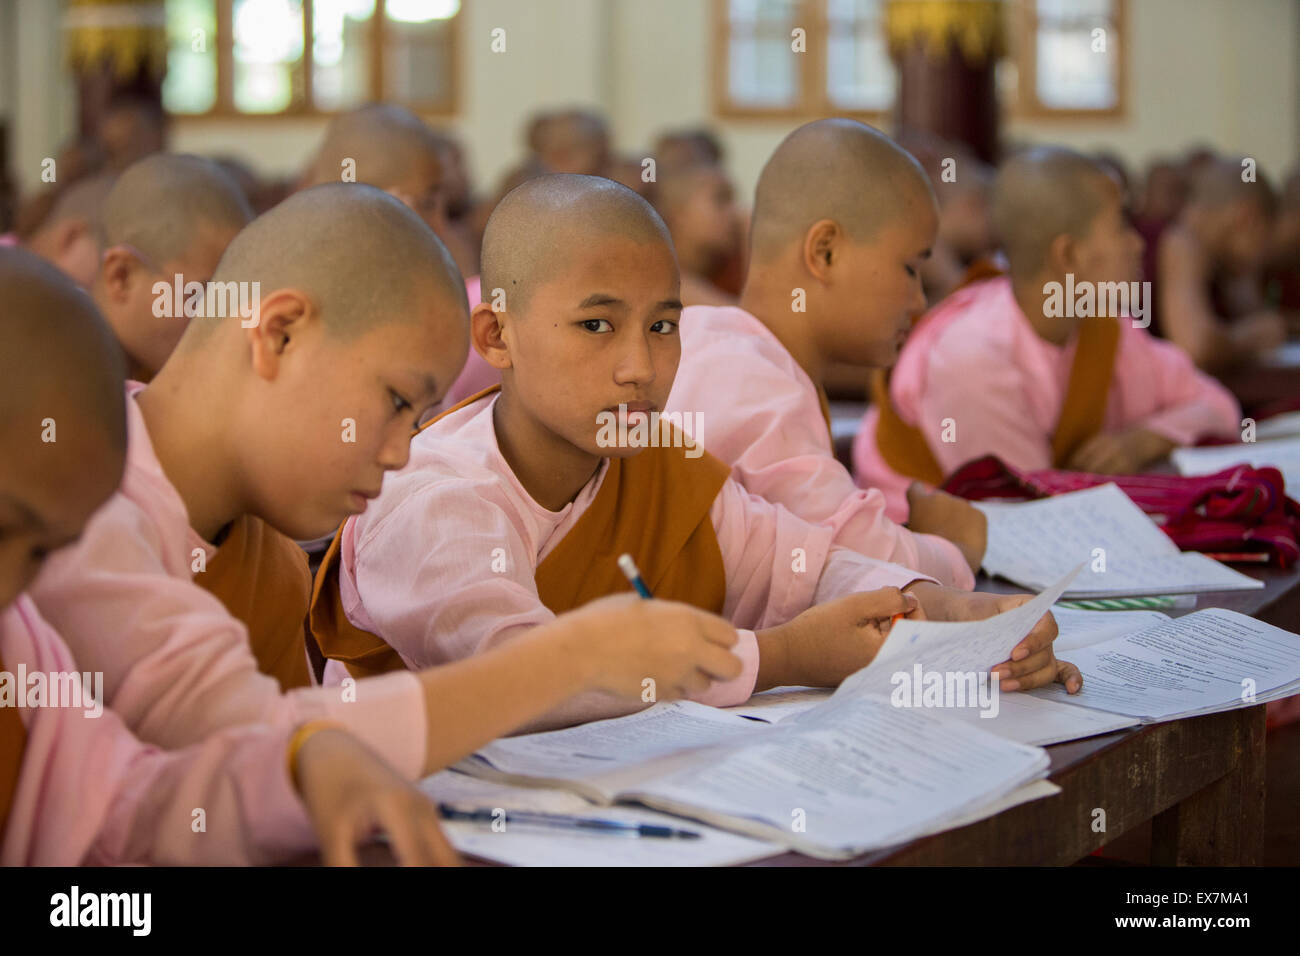 Kalaywa Tawya monastery English lessons, Yangon, Myanmar Stock Photo